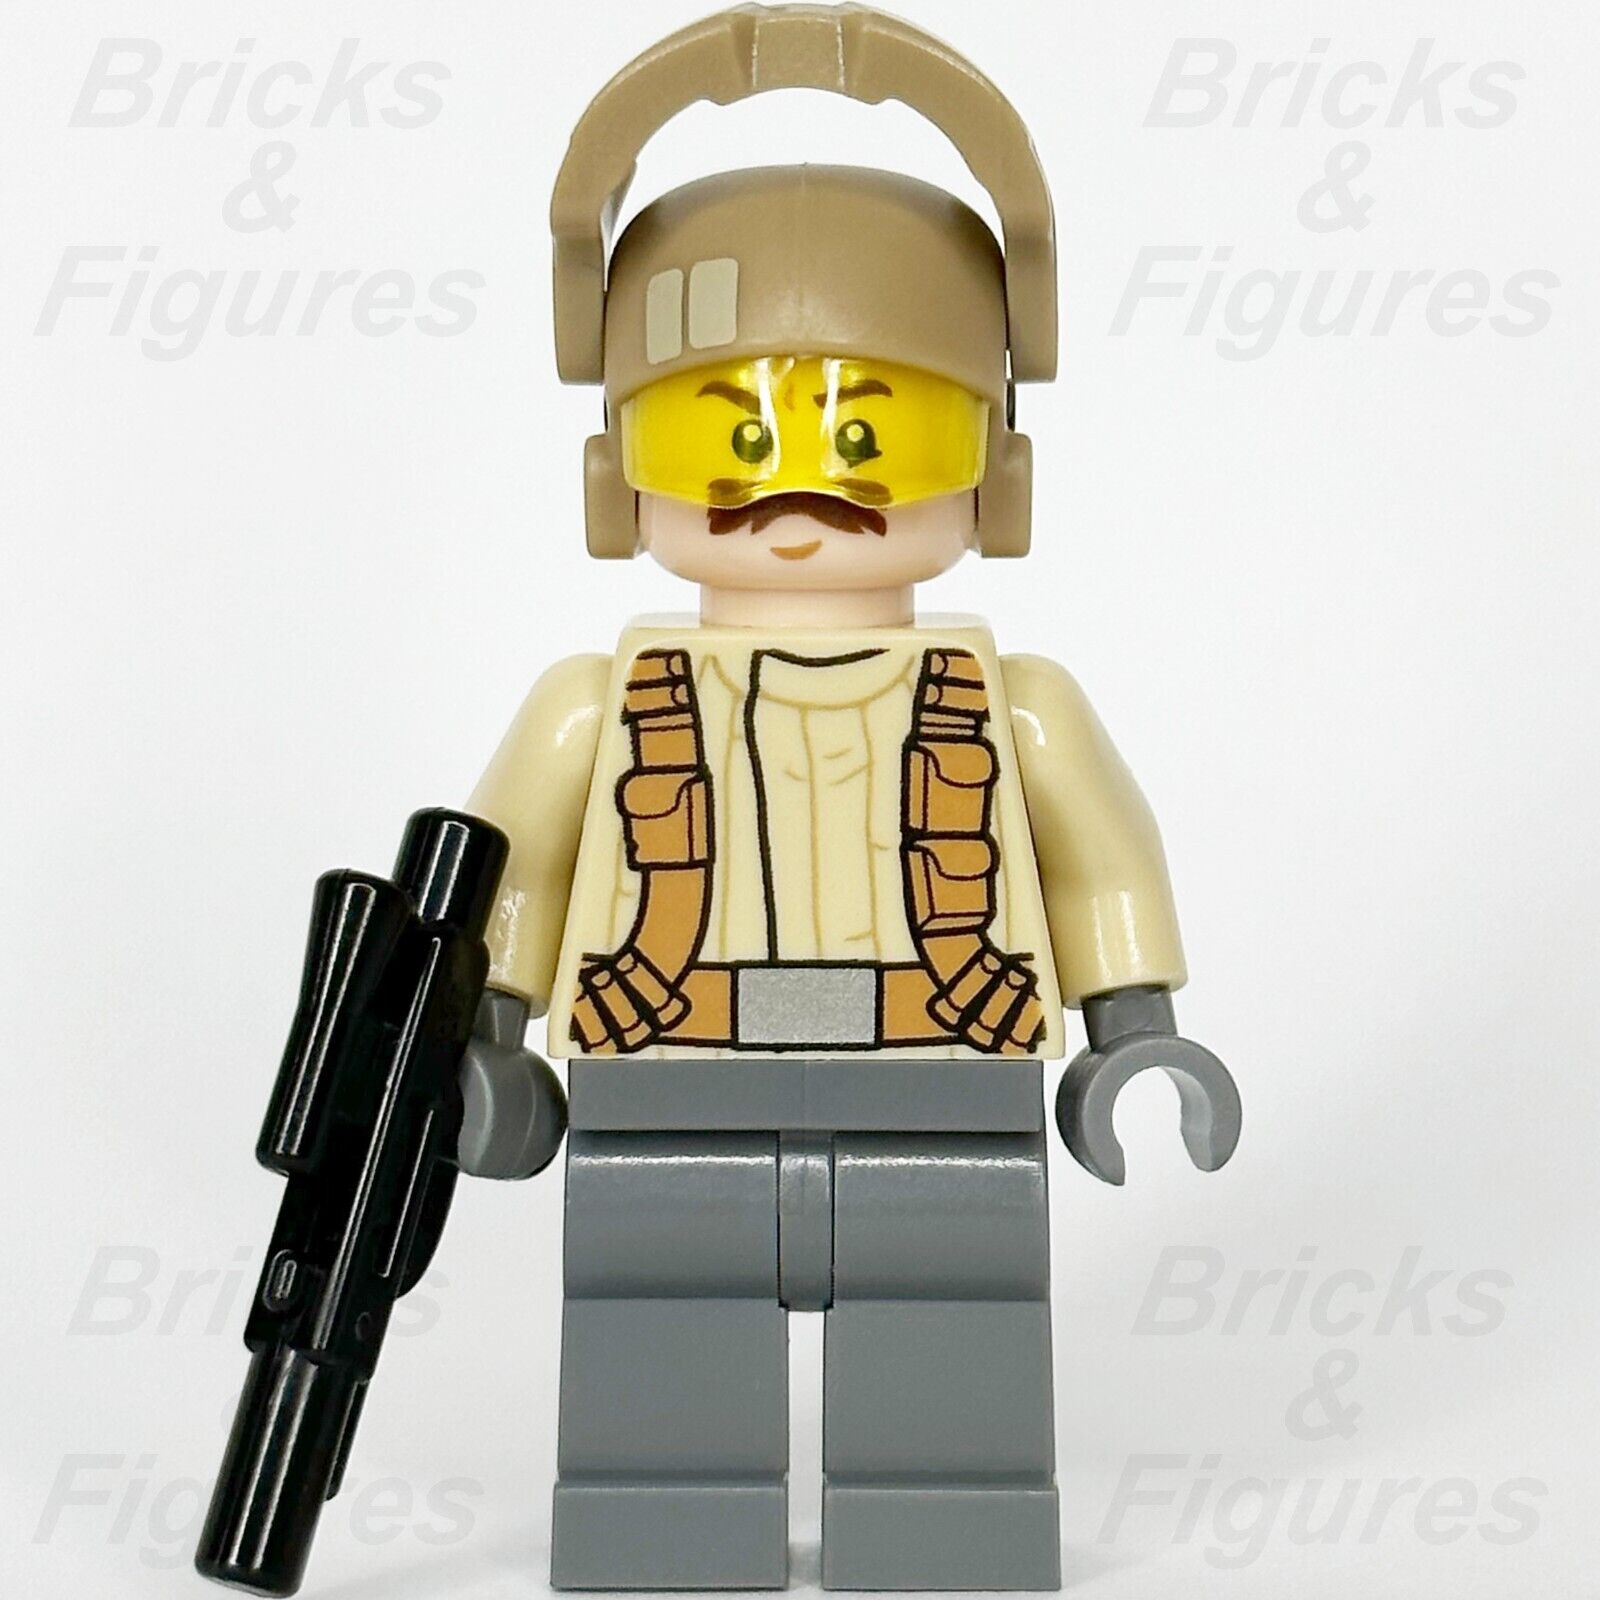 LEGO Star Wars Resistance Trooper Minifigure Tan Jacket Moustache 75131 sw0696 2